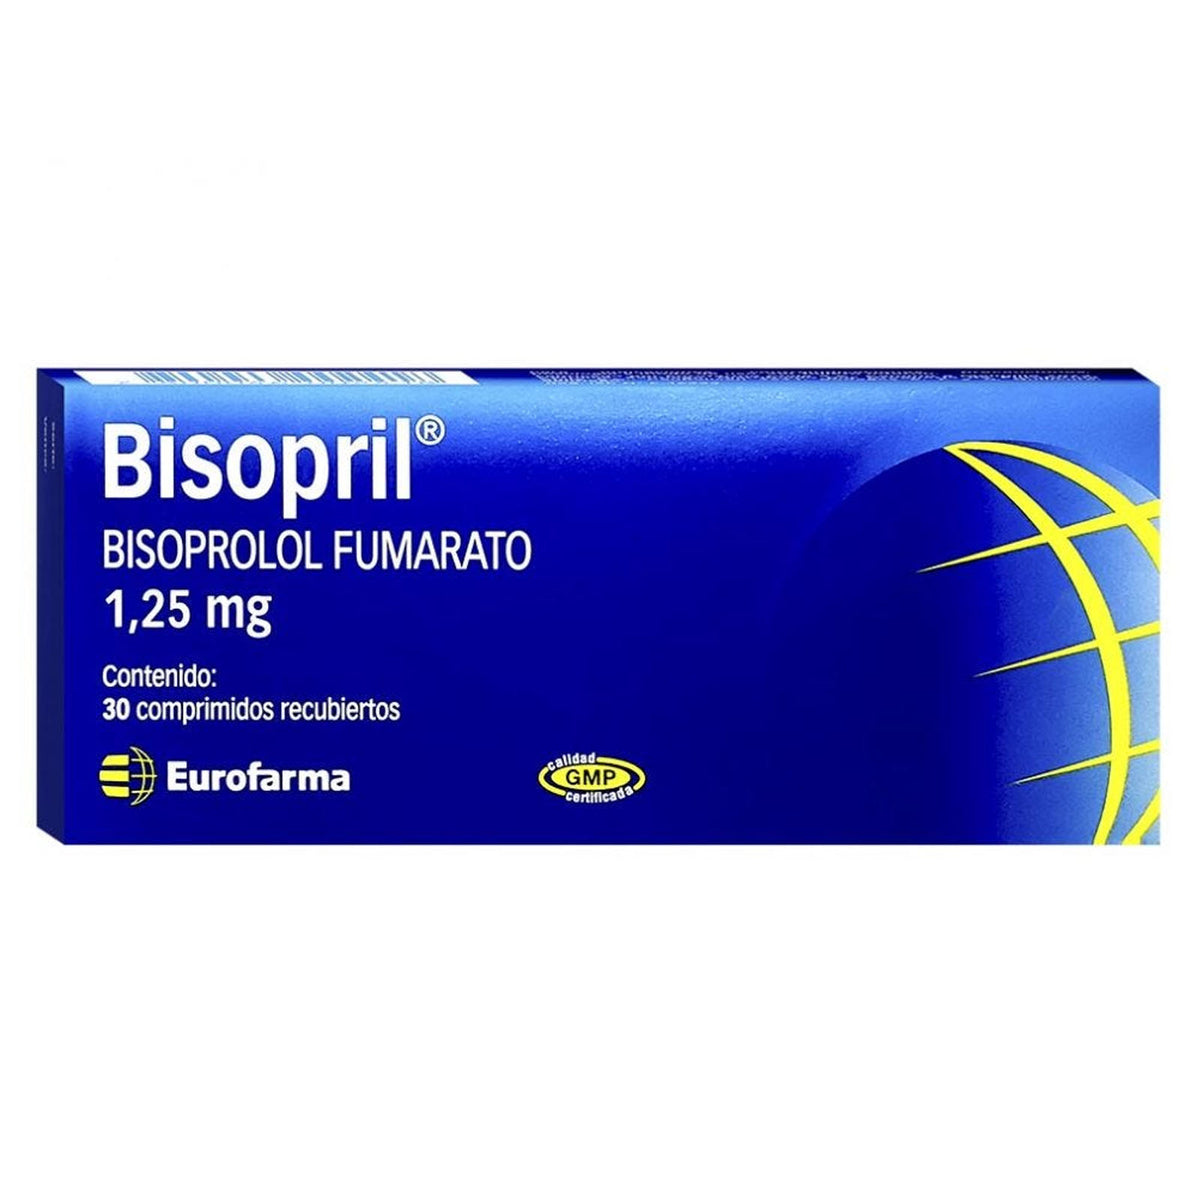 Bisopril Comprimidos Recubiertos 1,25mg